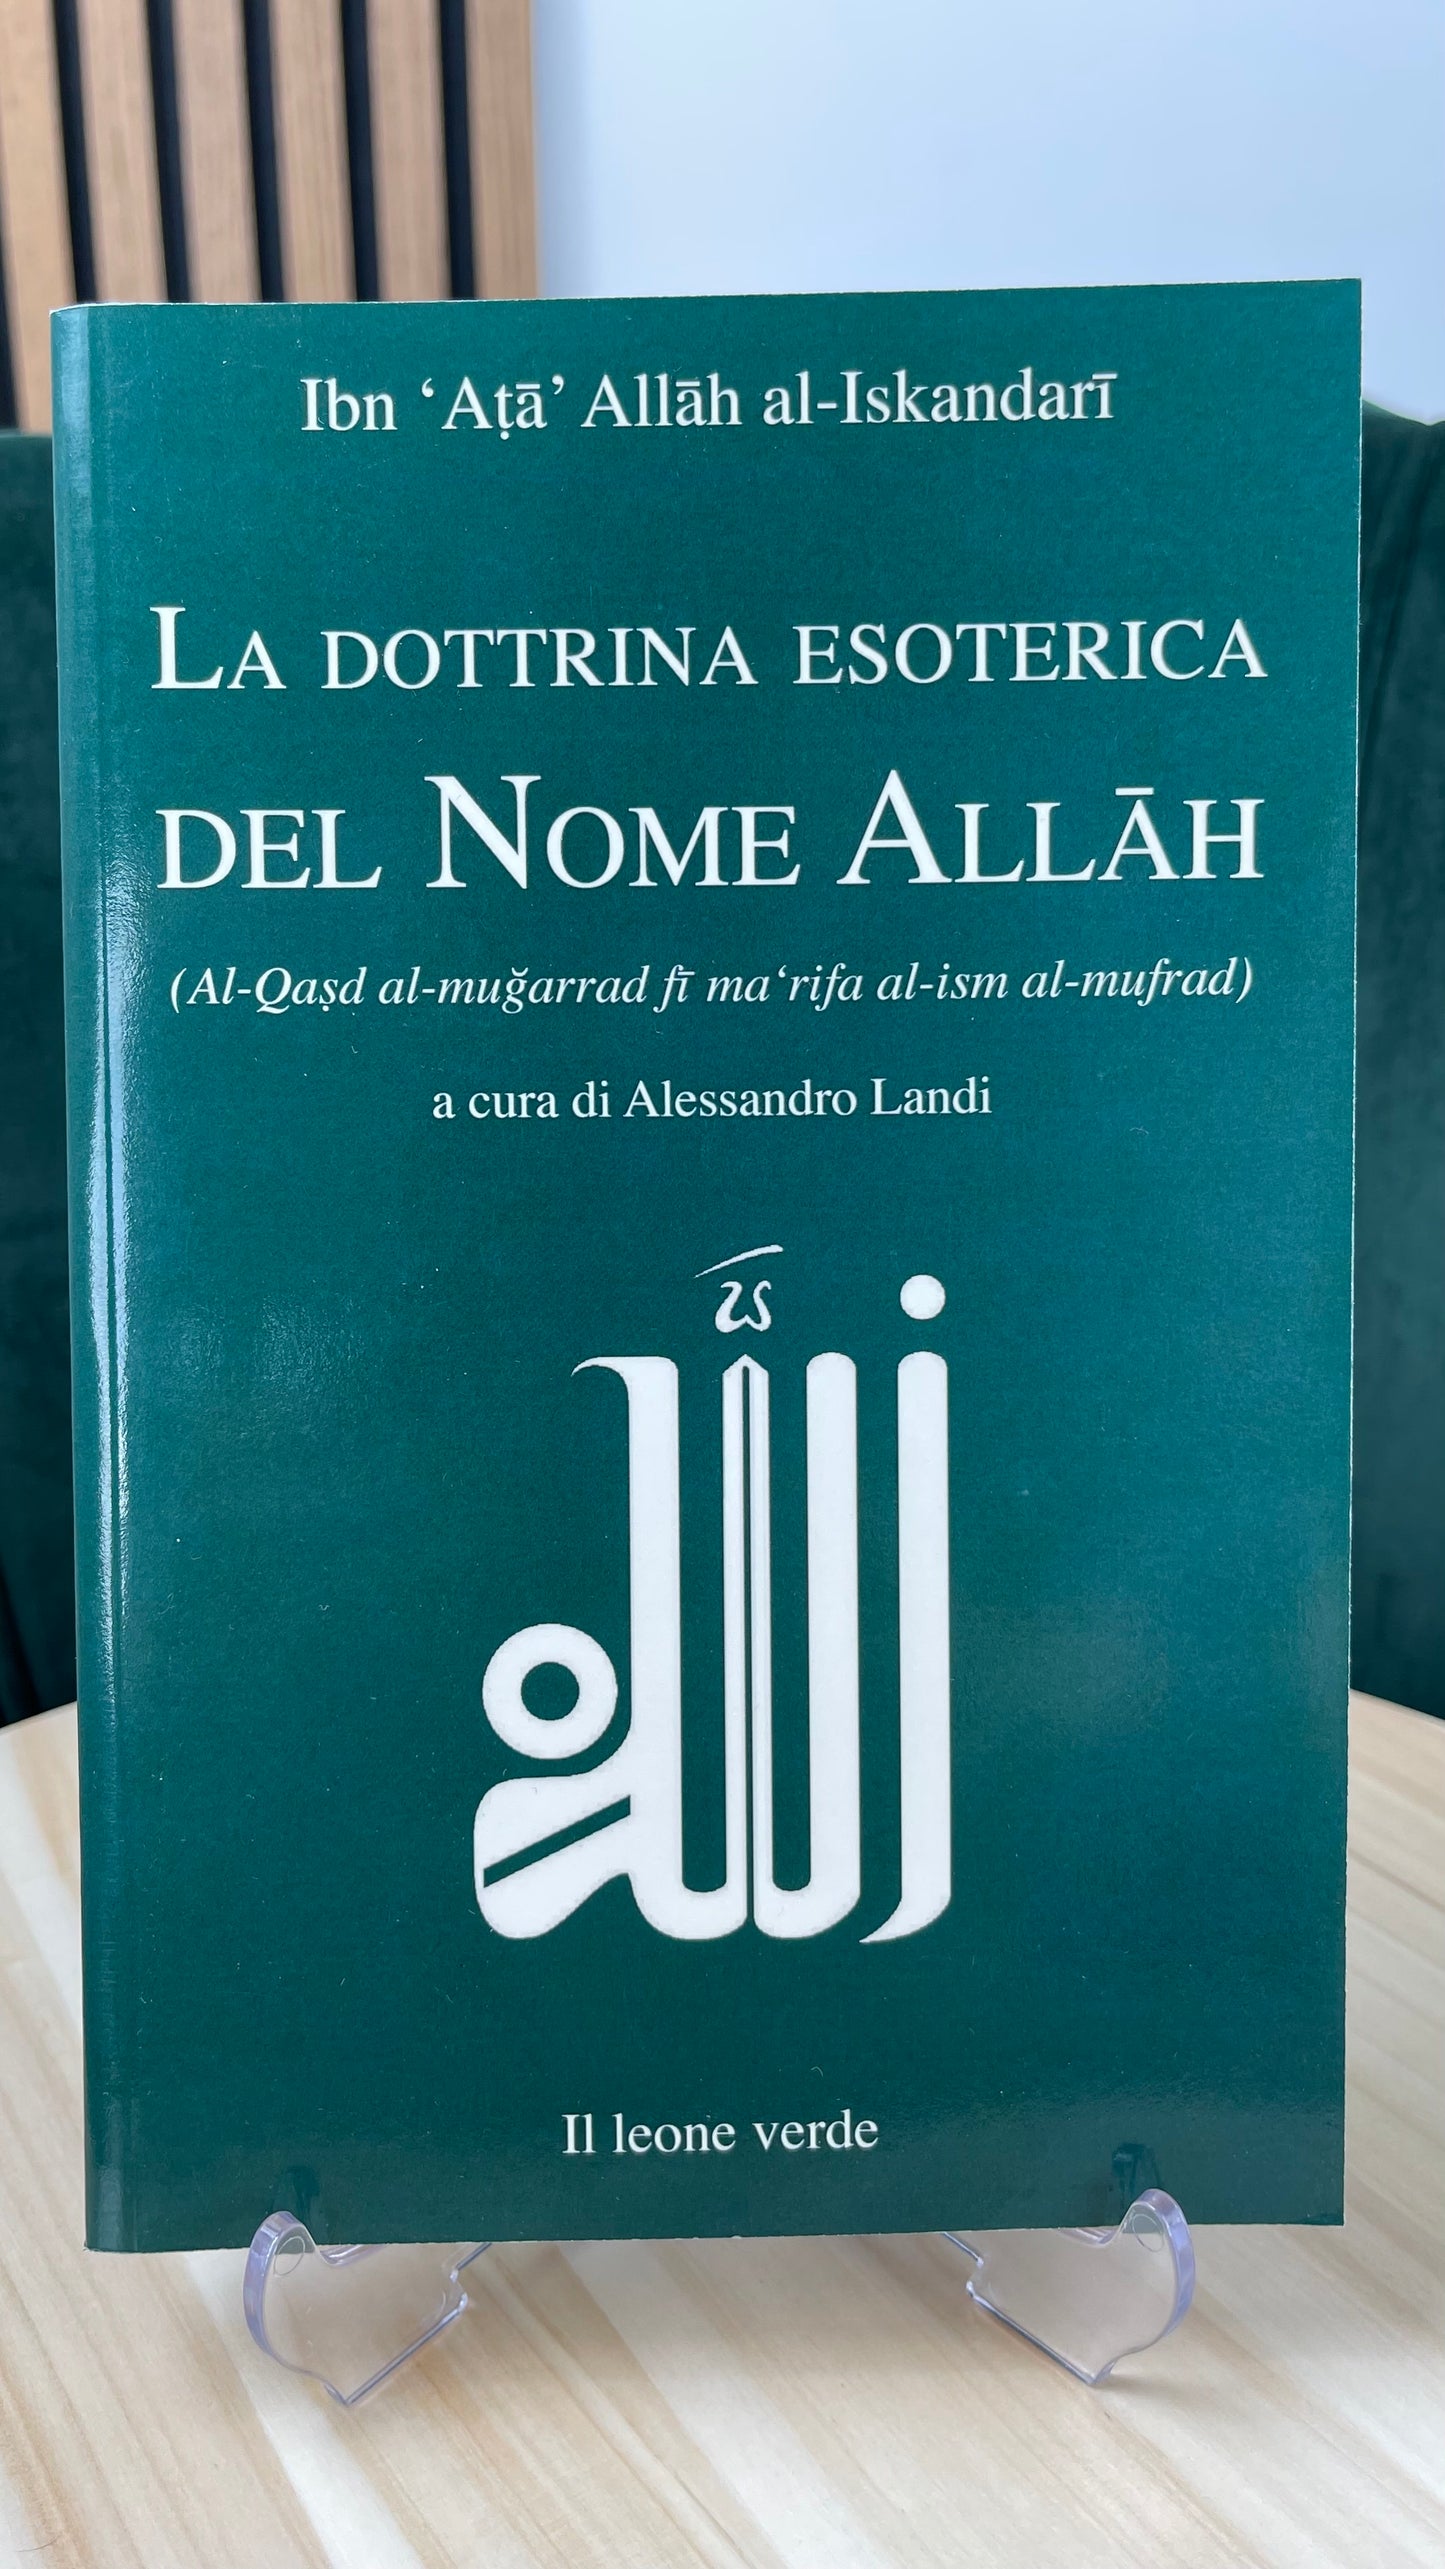 La dottrina esoterica del nome di Allah